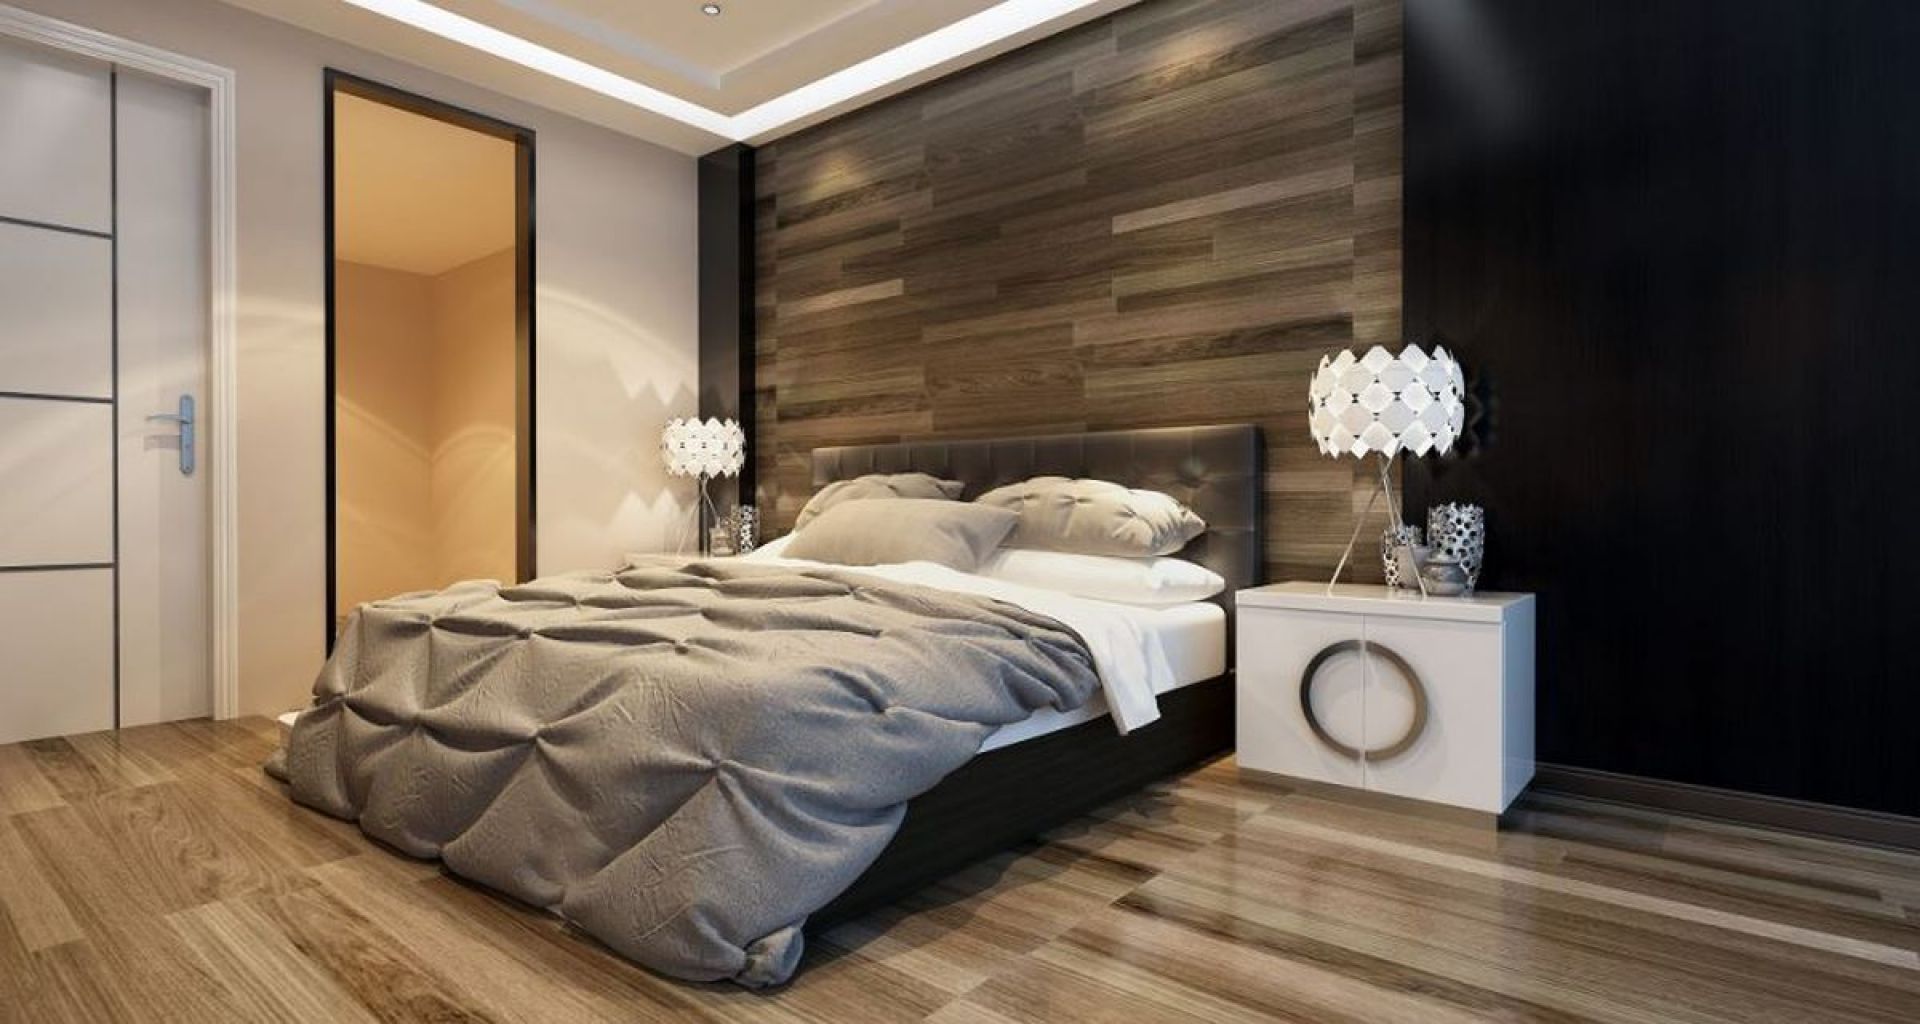 Drewno to doskonały sposób na modną i ciepłą sypialnię. Można go stosować jako dodatek lub w formie mebli. Fot. Janpol